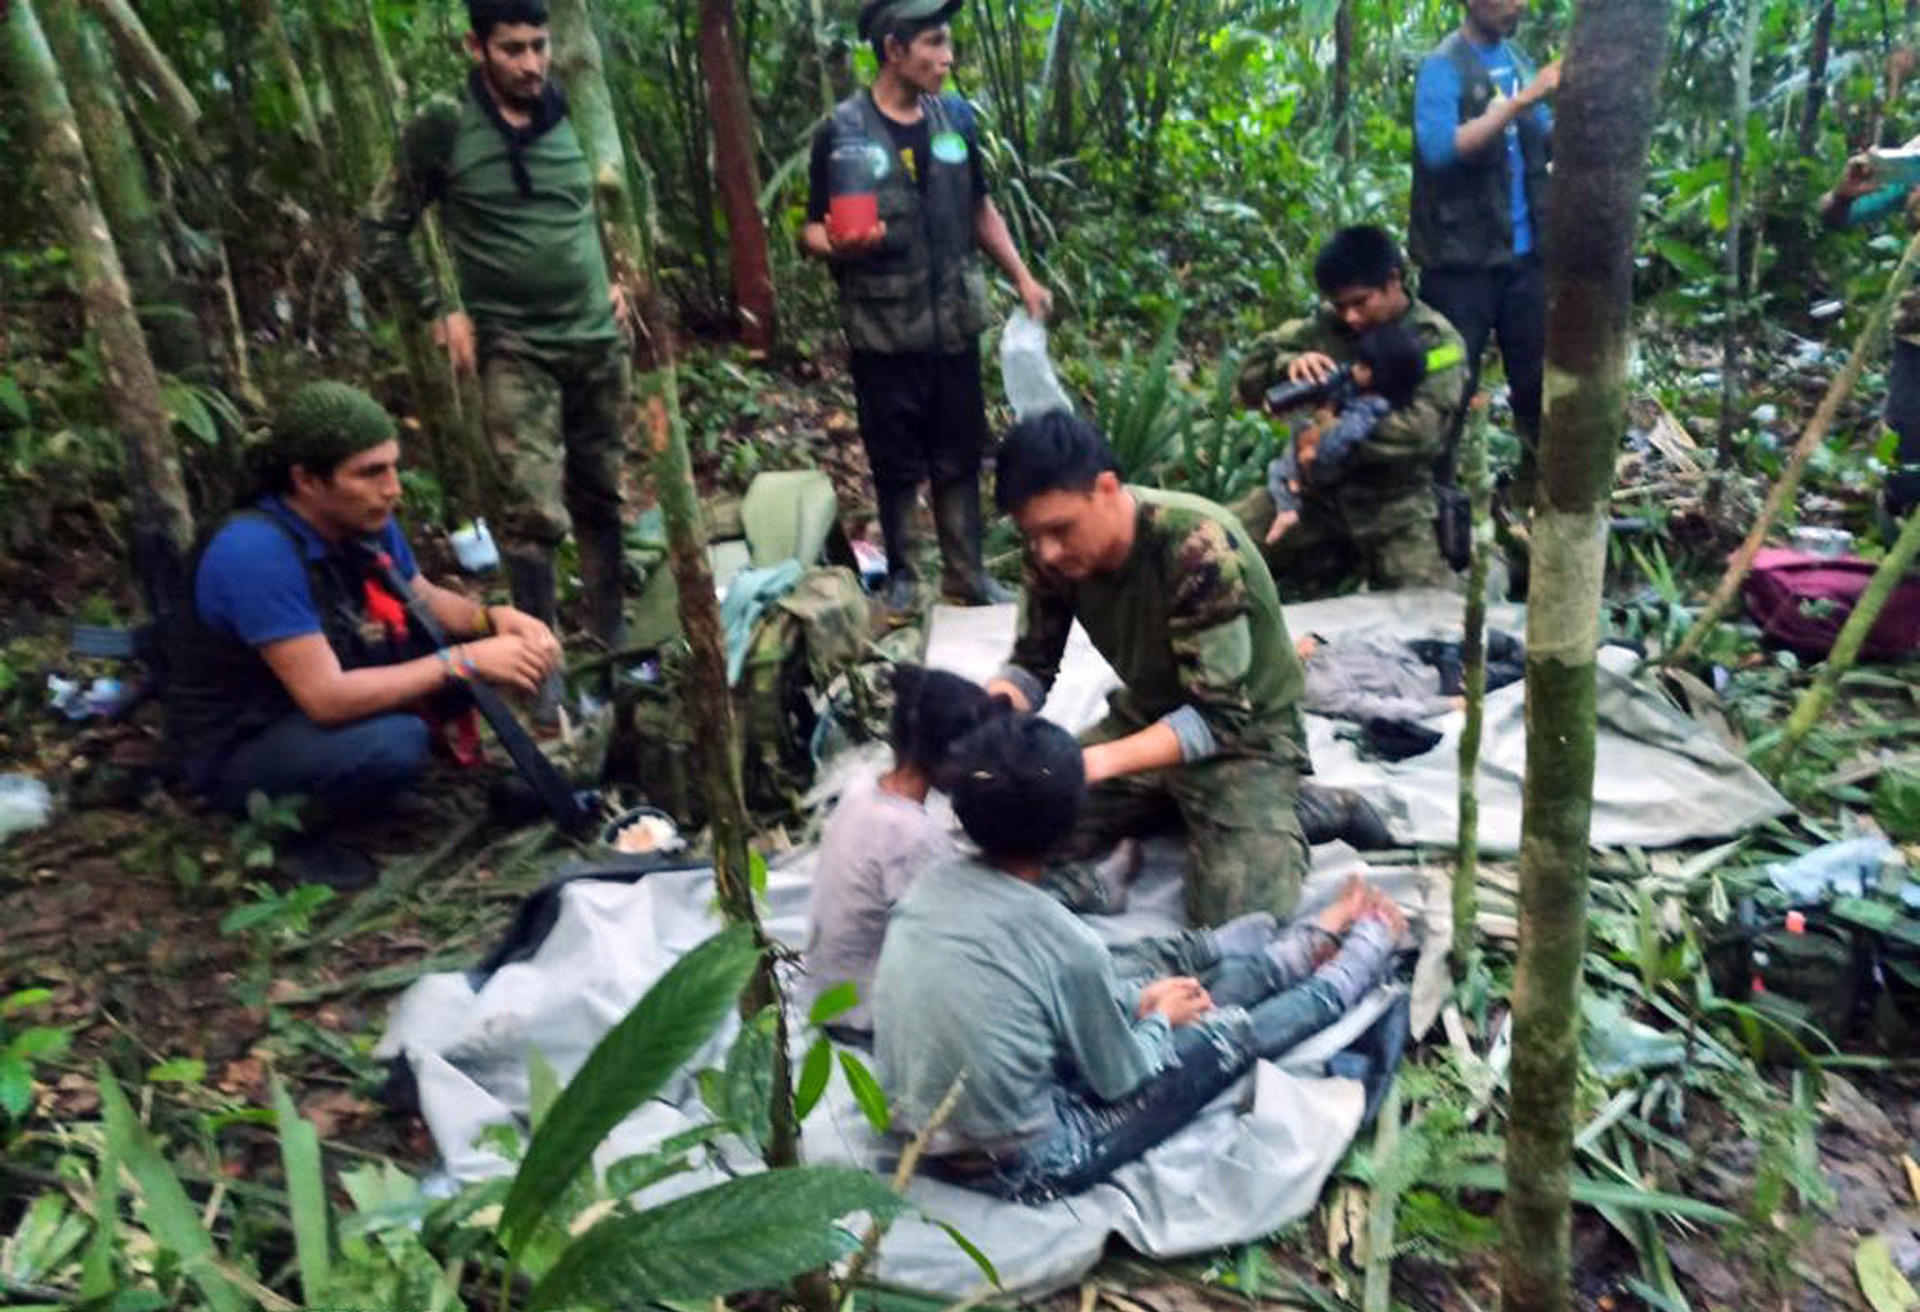 Los niños rescatados en la selva colombiana esperaron por ayuda cerca del avión accidentado durante cuatro días